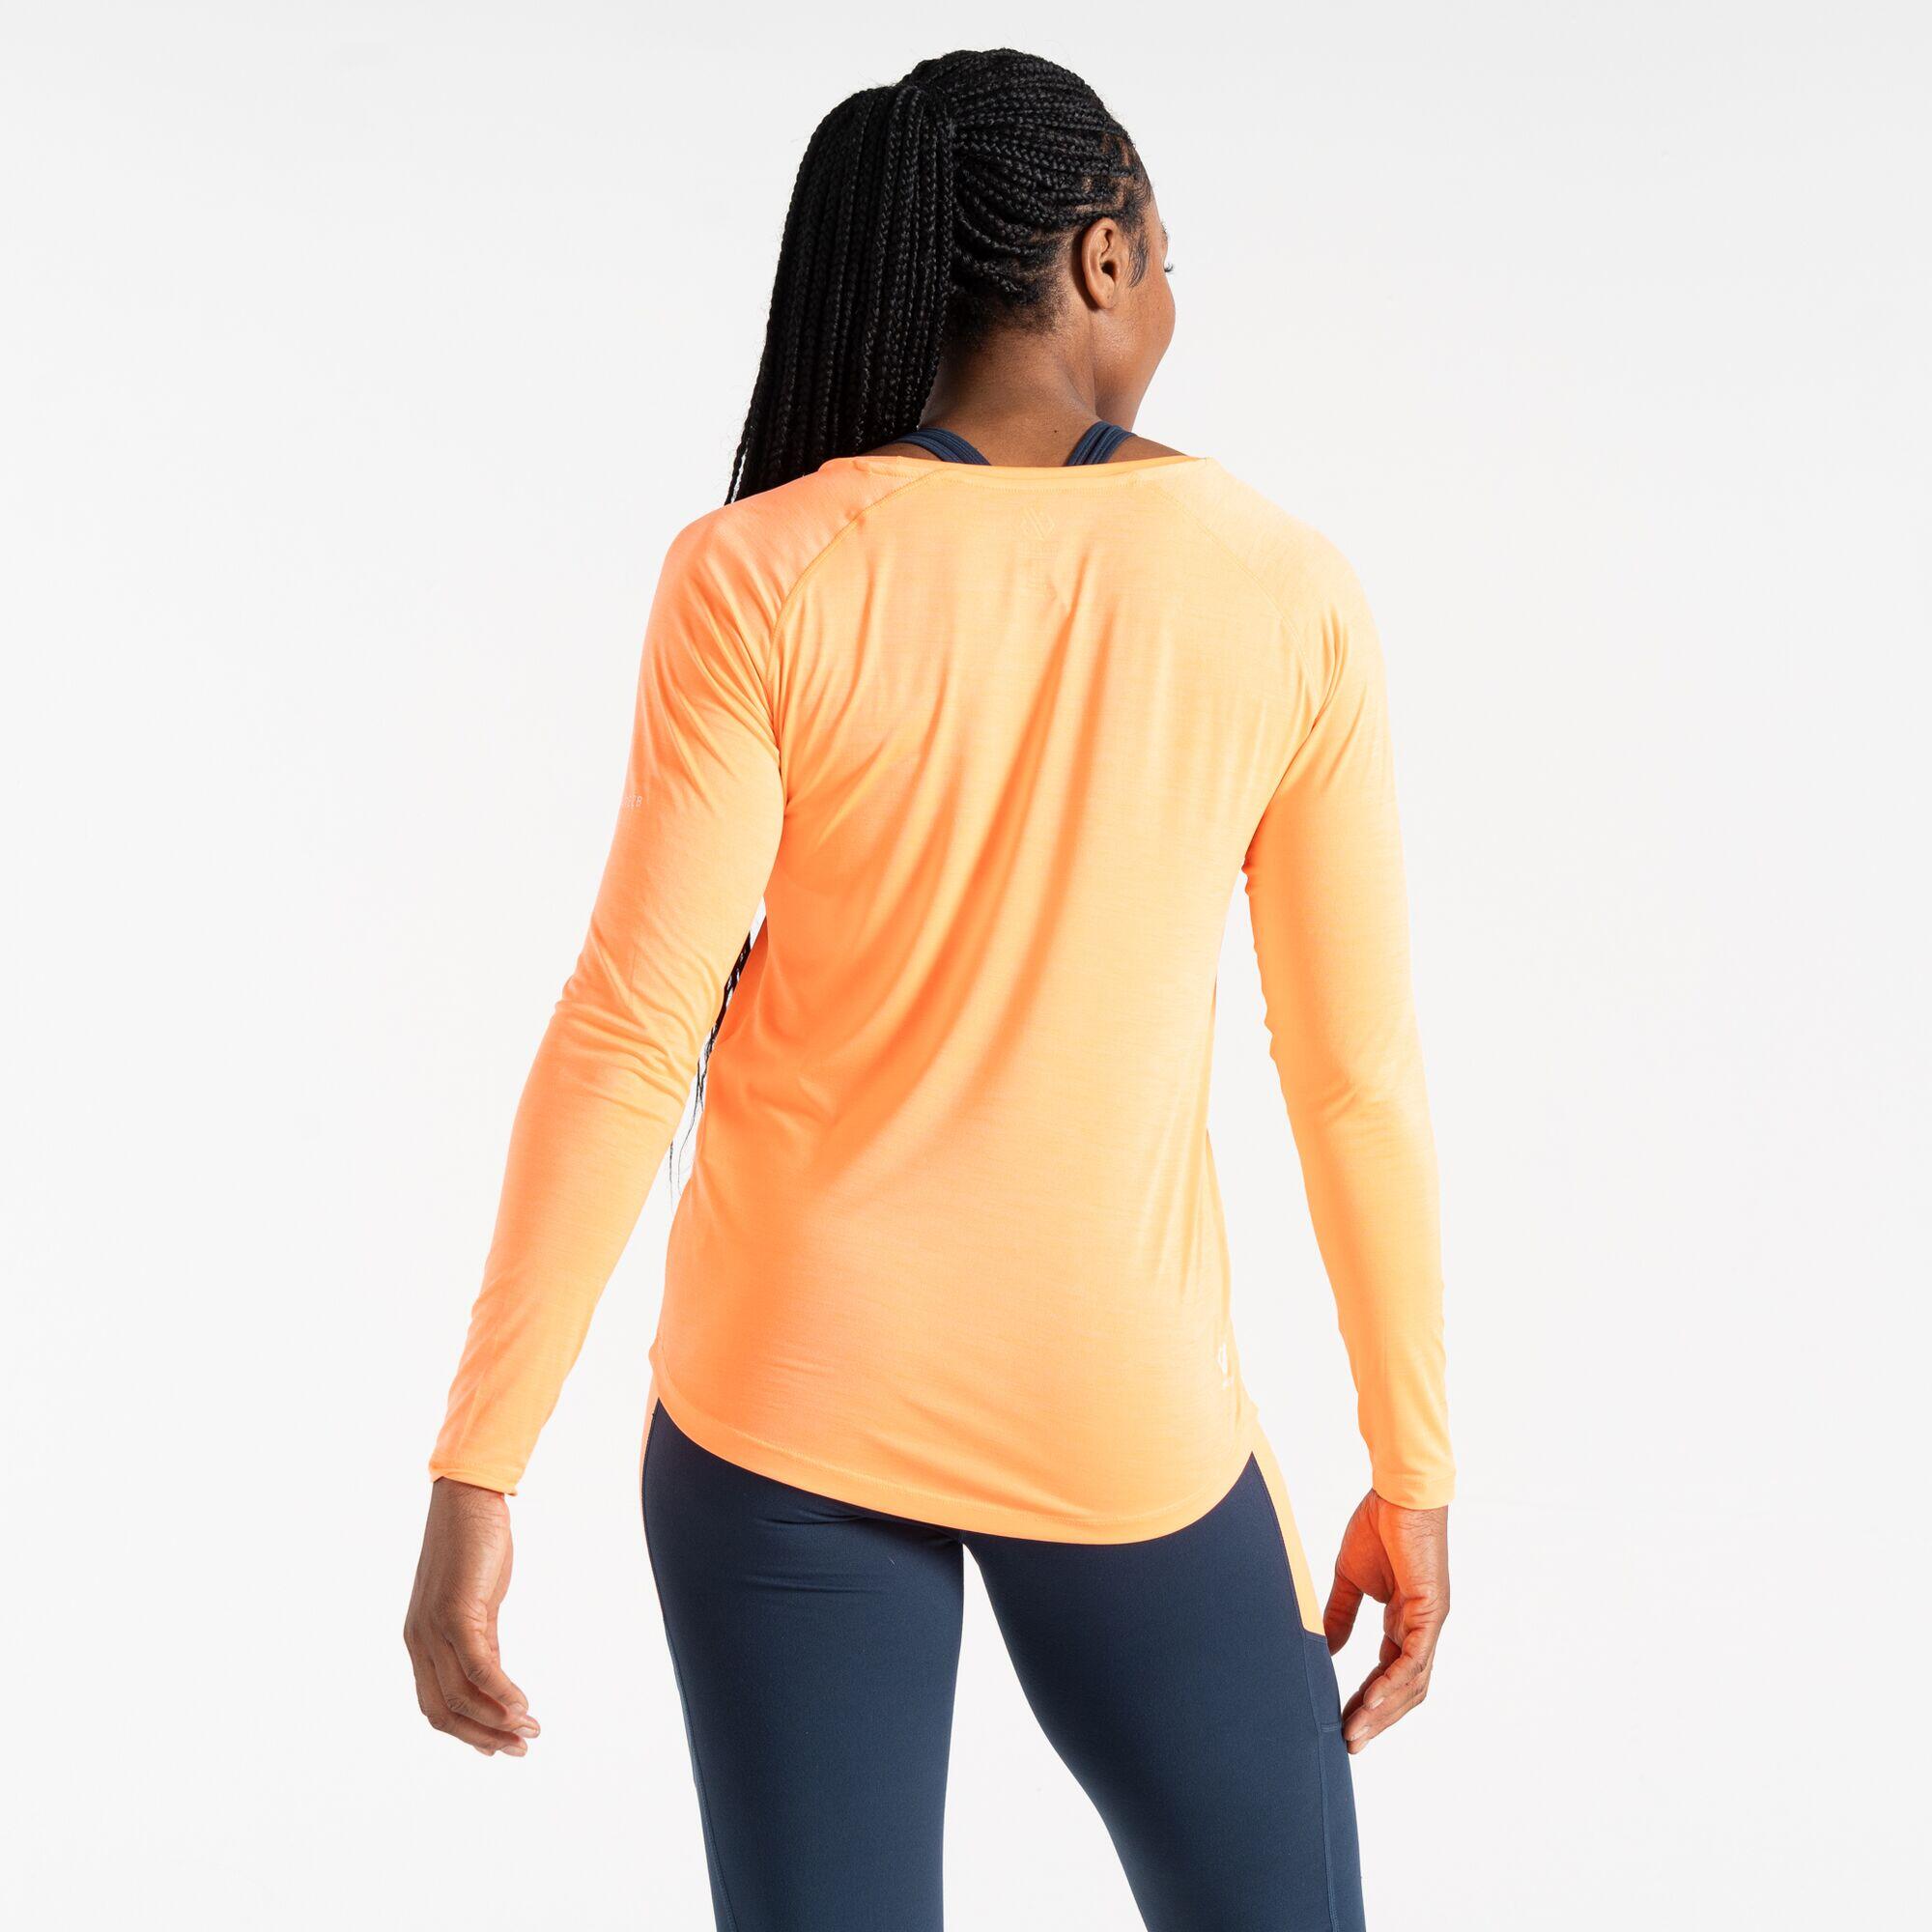 Discern Women's Running Long Sleeve T-Shirt 3/5